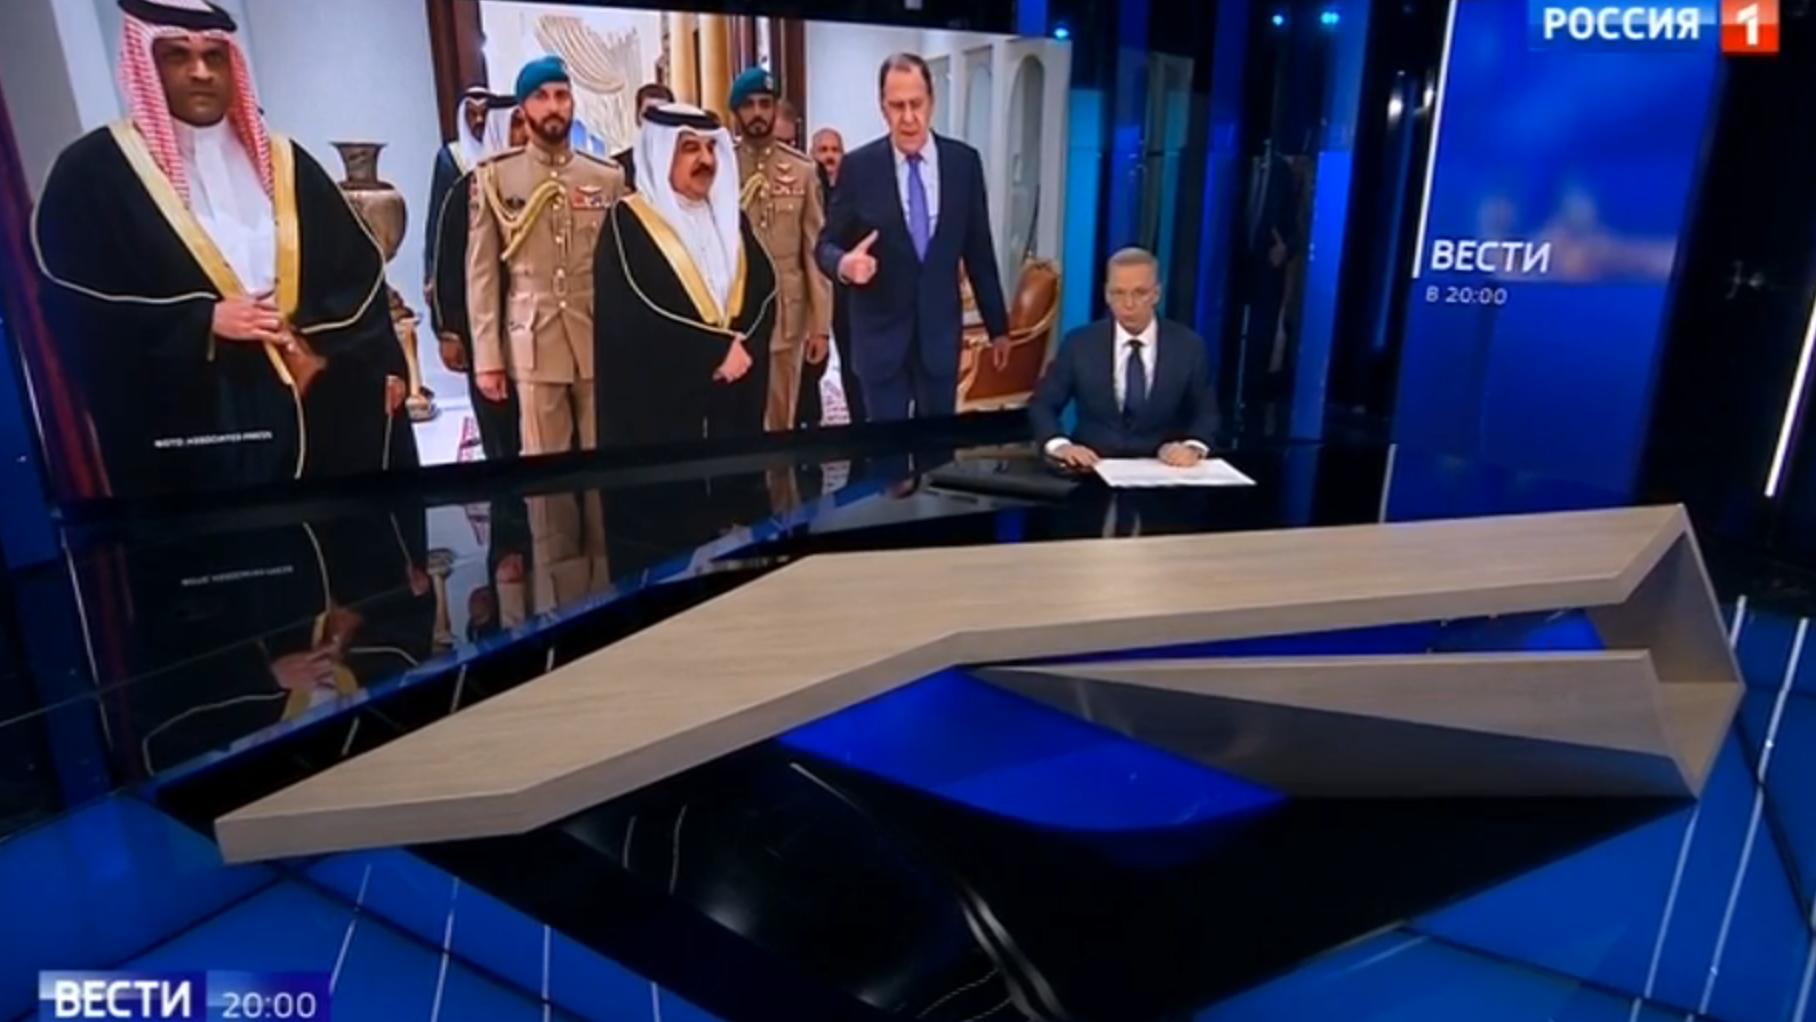 Studio telewizyjne, prezenter. w tle: zdjęcie ze spotkania dyplomatycznego dostojników w szatach arabskich i w stroju europejskim